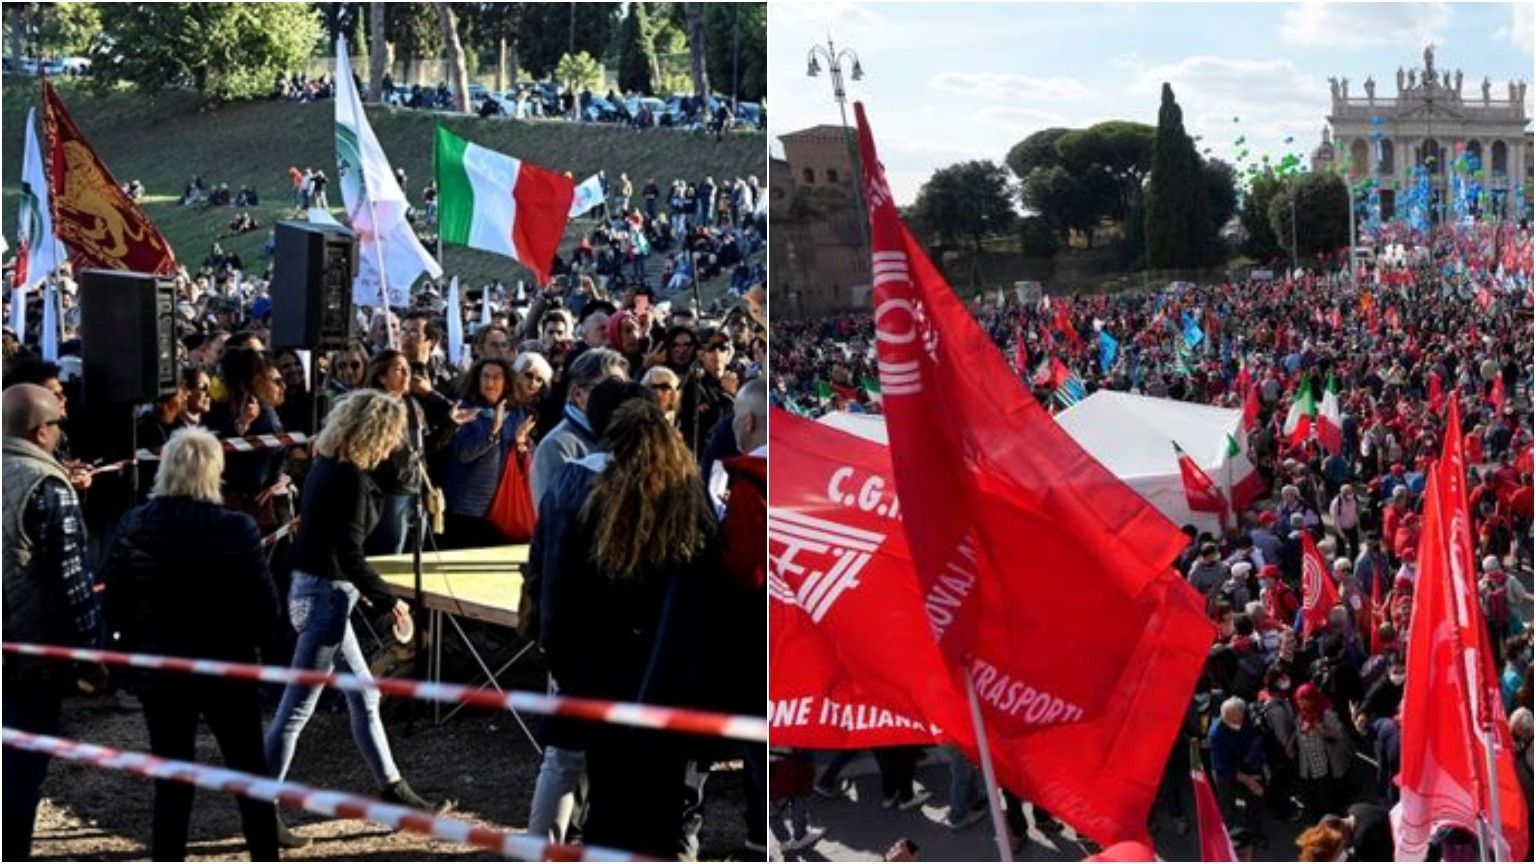 У Римі десятки тисяч італійців вимагали заборонити ультраправу партію - Україна новини - 24 Канал